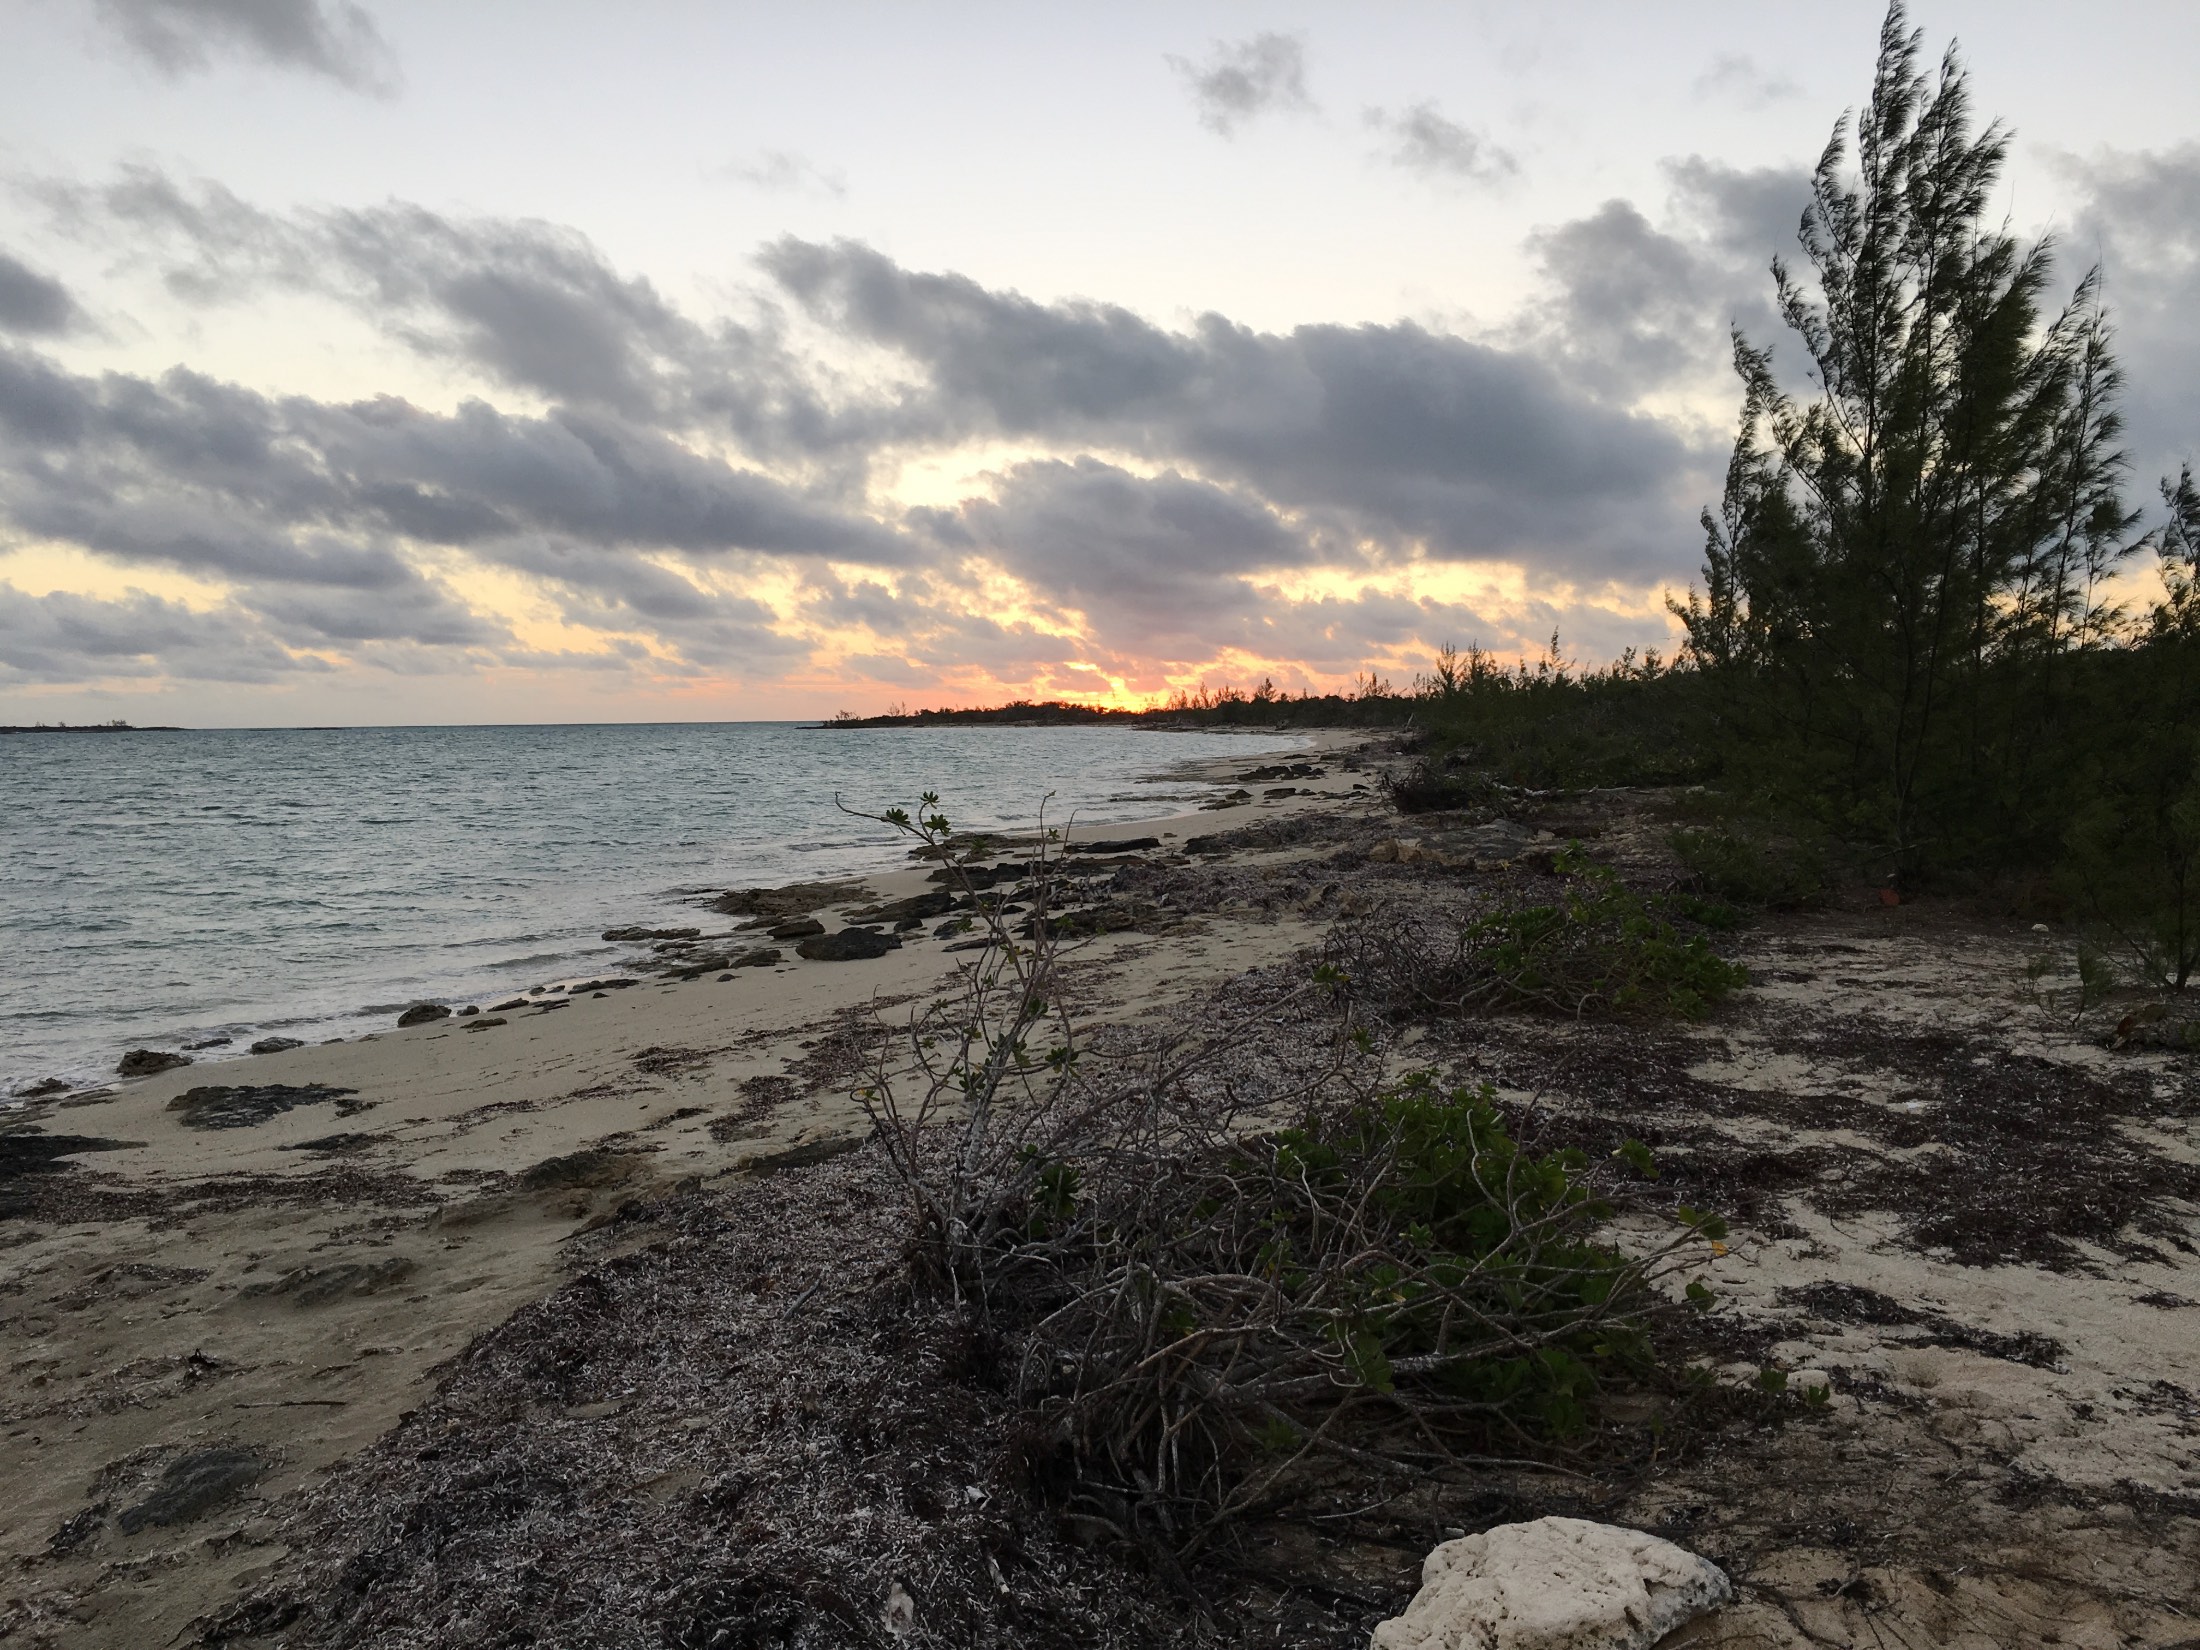 Feb 7 dawn survey at Kamalame Cay - no piping plovers